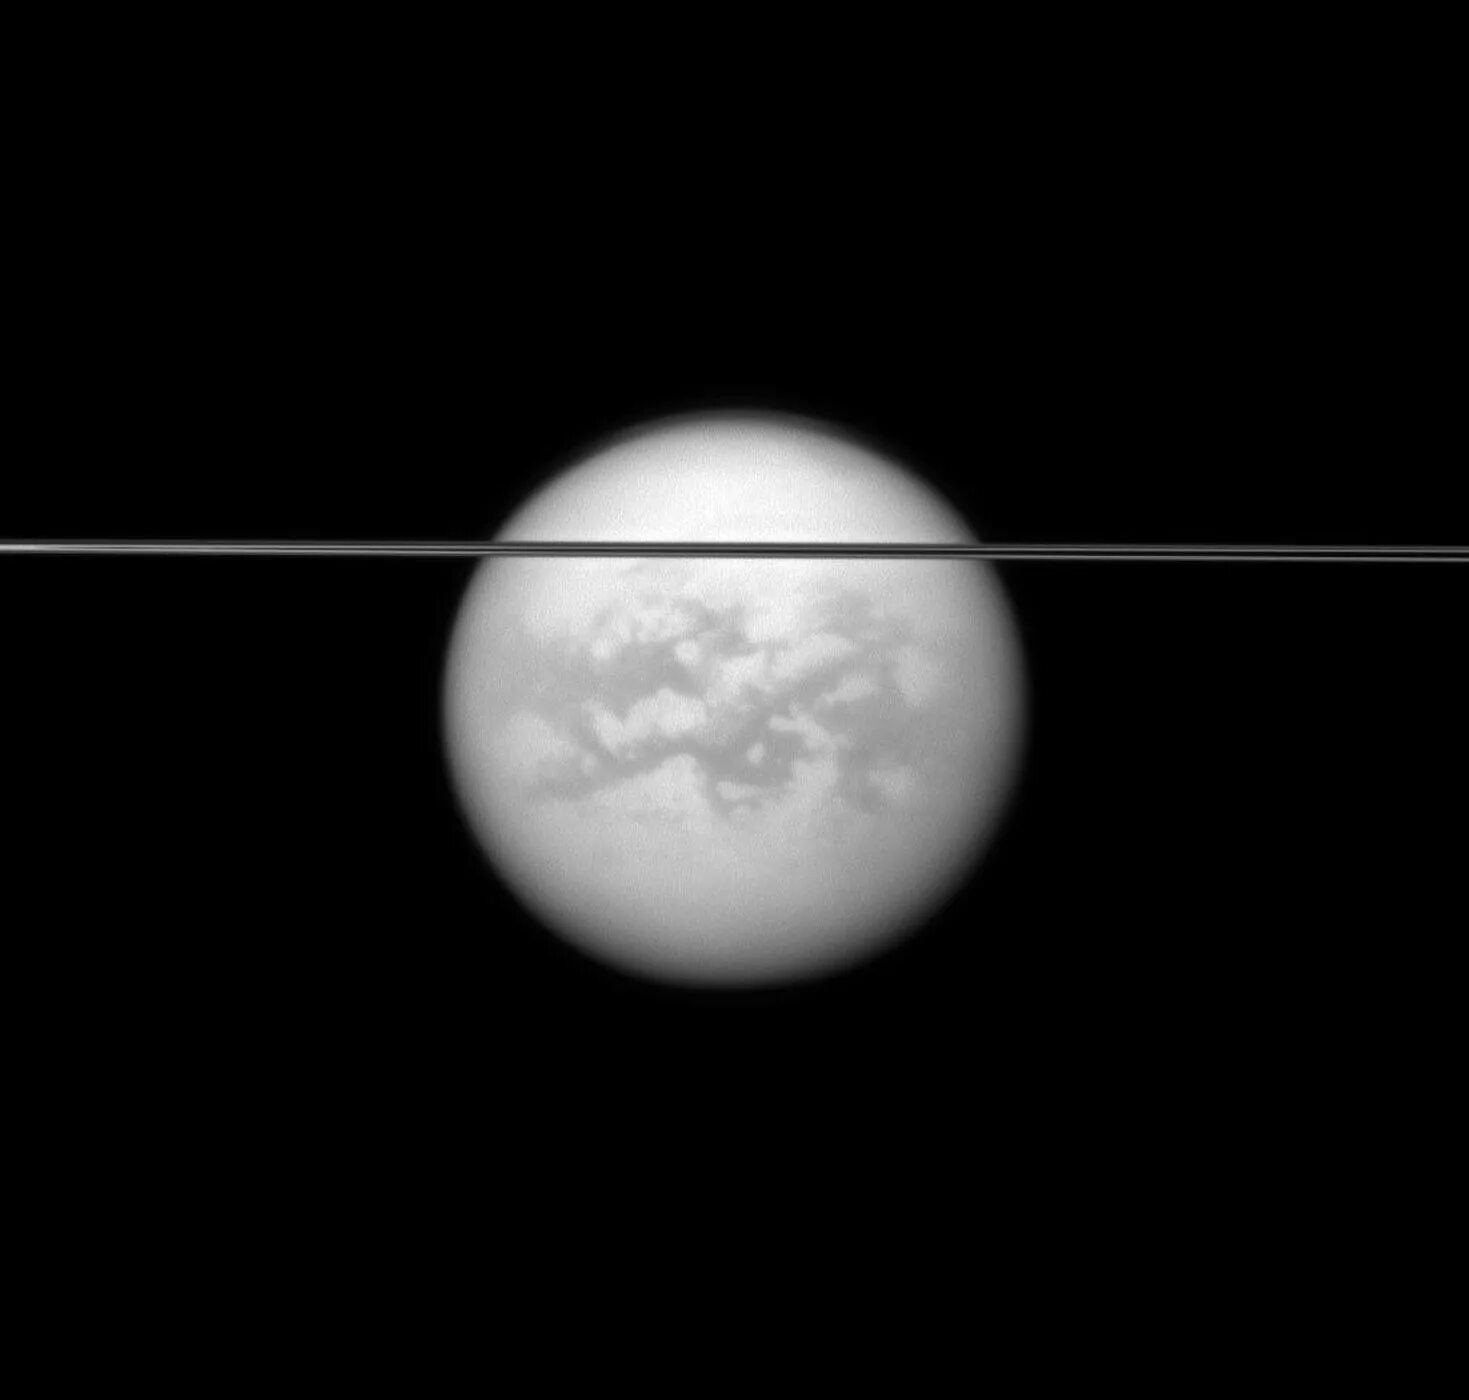 Титан Спутник Сатурна. Атмосфера титана спутника Сатурна. Титан Спутник спутники Сатурна. Планета Титан Кассини. Спутник плотной атмосферой